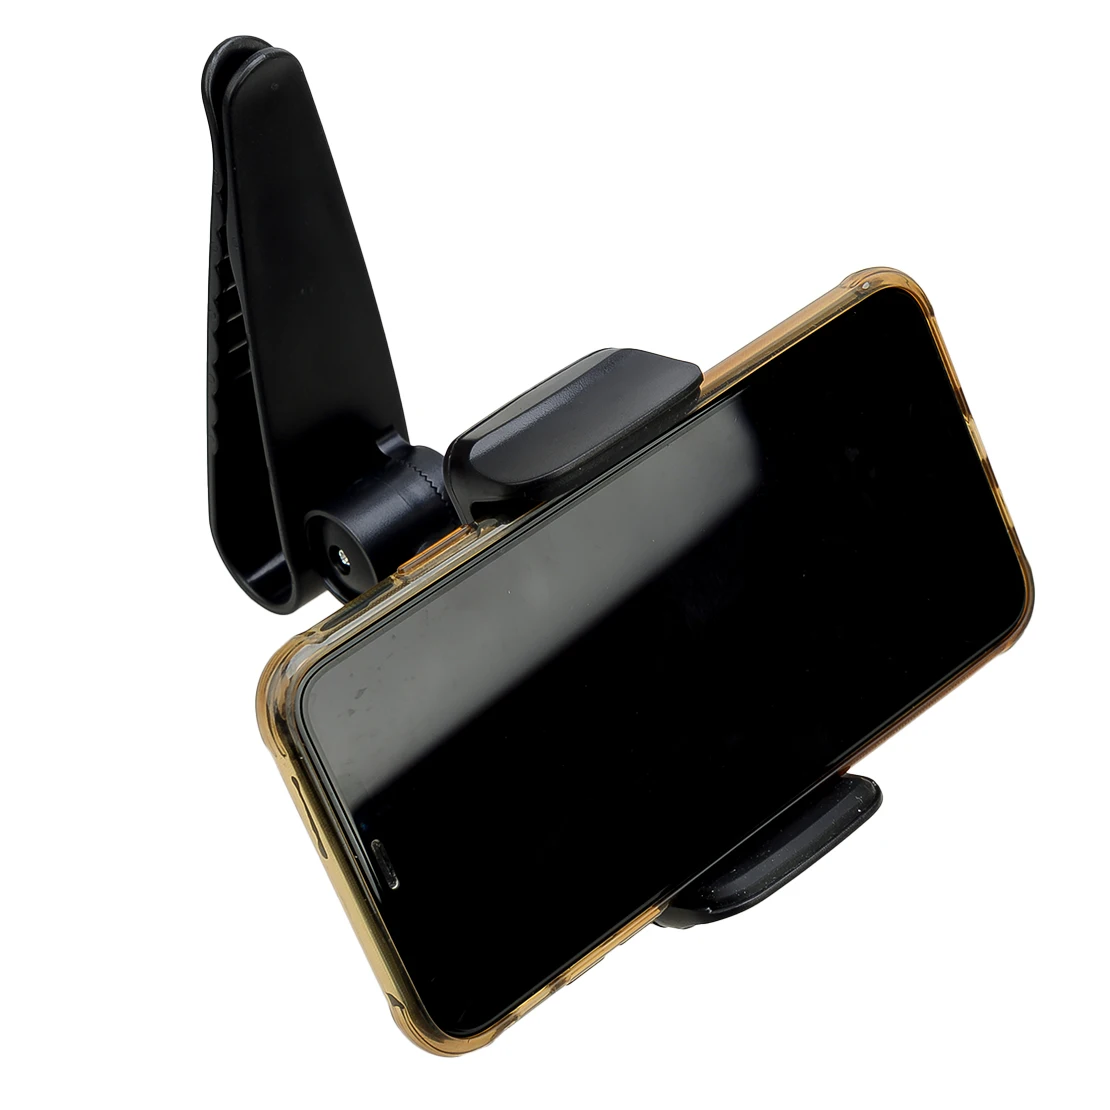 אוניברסלי שחור 360° Rotatable המכונית מגן השמש הטלפון הר מחזיק עם קליפ פלסטיק ABS - 4